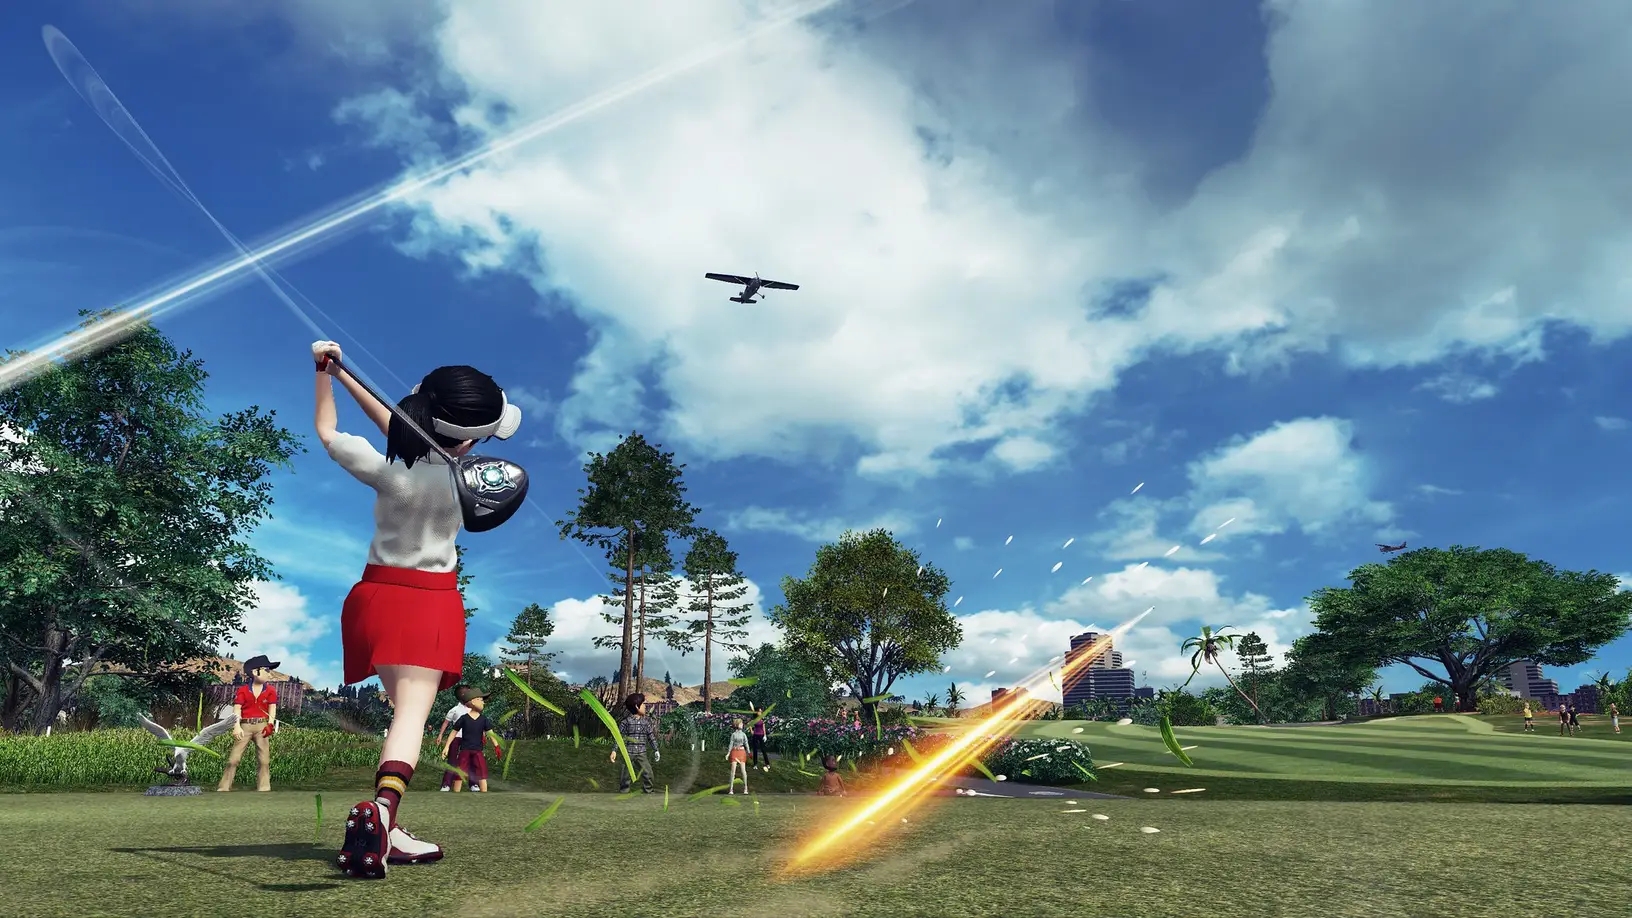 索尼宣布PS4体育游戏《新·全民高尔夫》将在9月30日正式关服 不过玩家仍然可以离线游玩